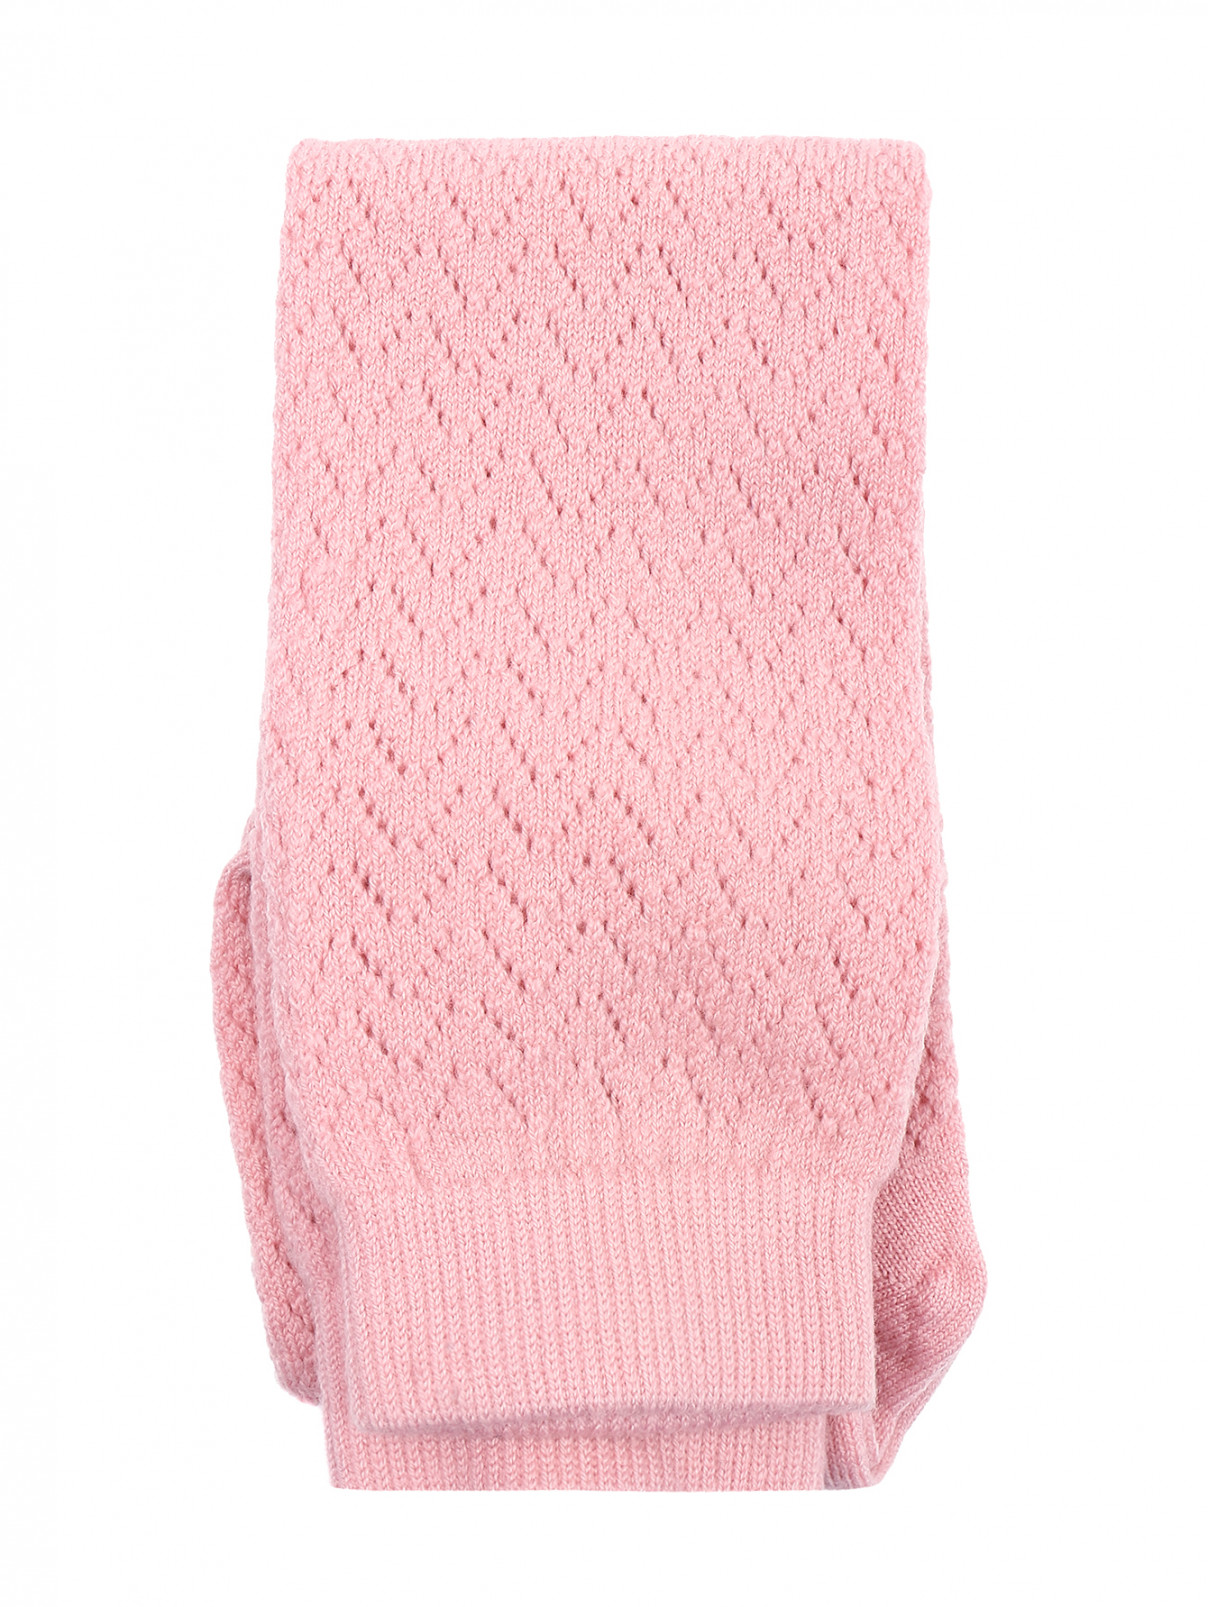 Гольфы из шерсти ажурной вязки Antonio Marras  –  Общий вид  – Цвет:  Розовый